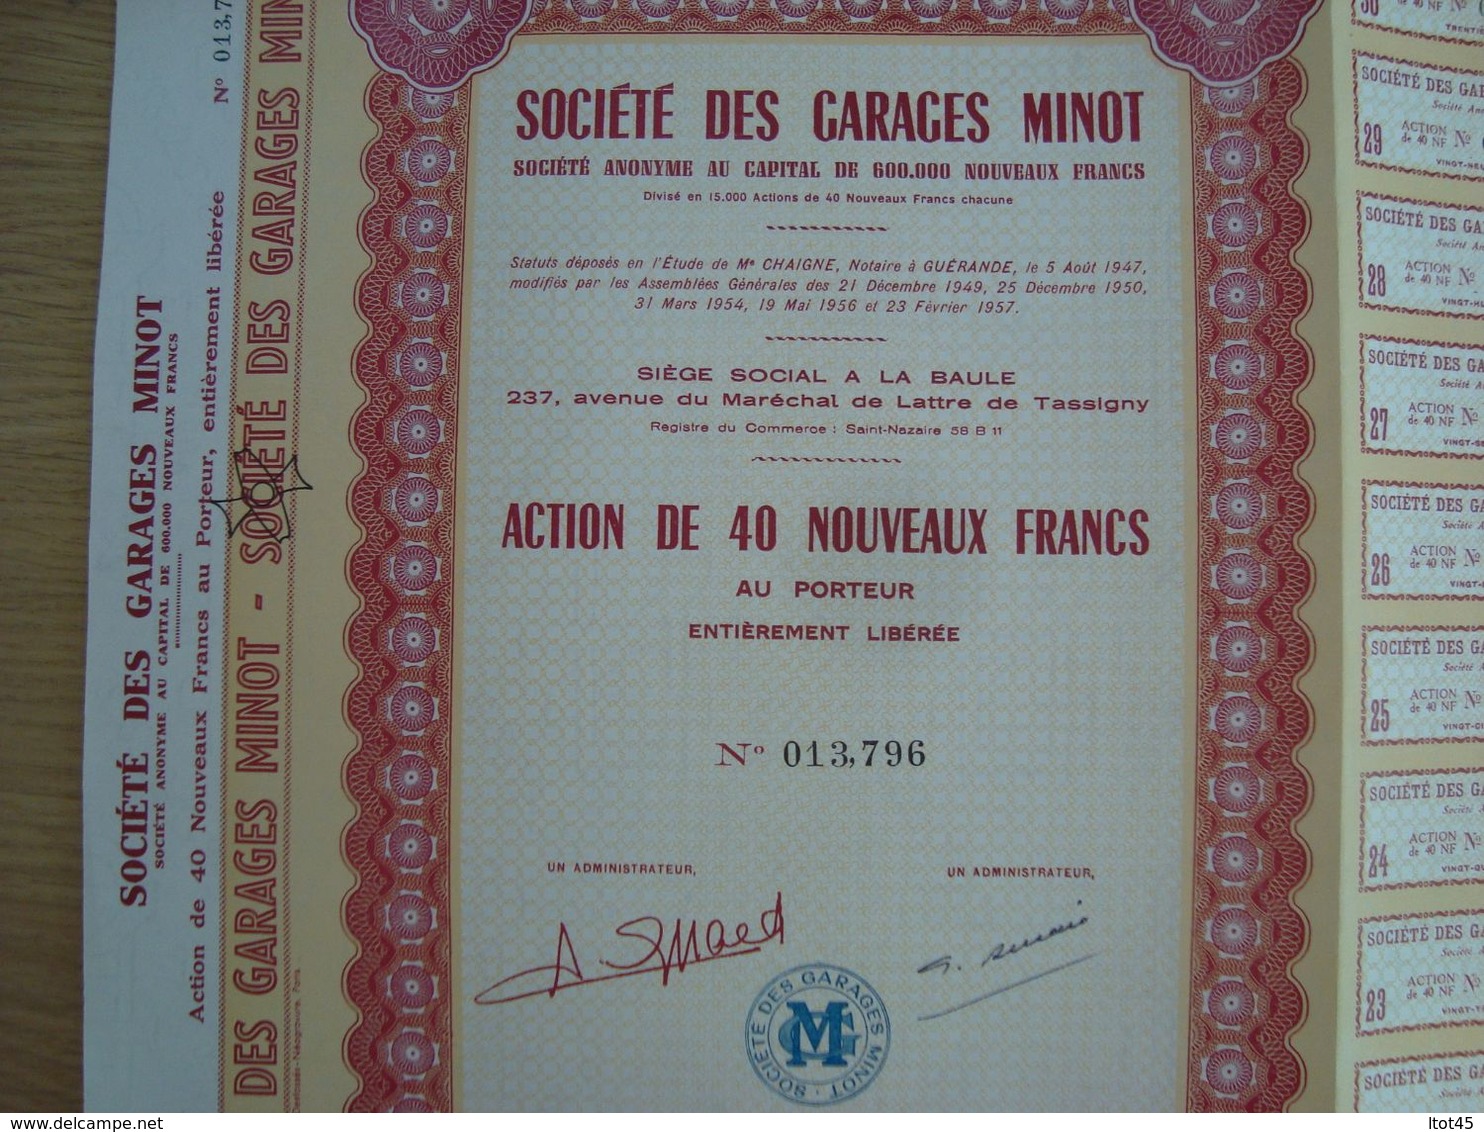 ACTION DE 40 NOUVEAUX FRANCS SOCIETE DES GARAGES MINOT 1960 - Automobilismo